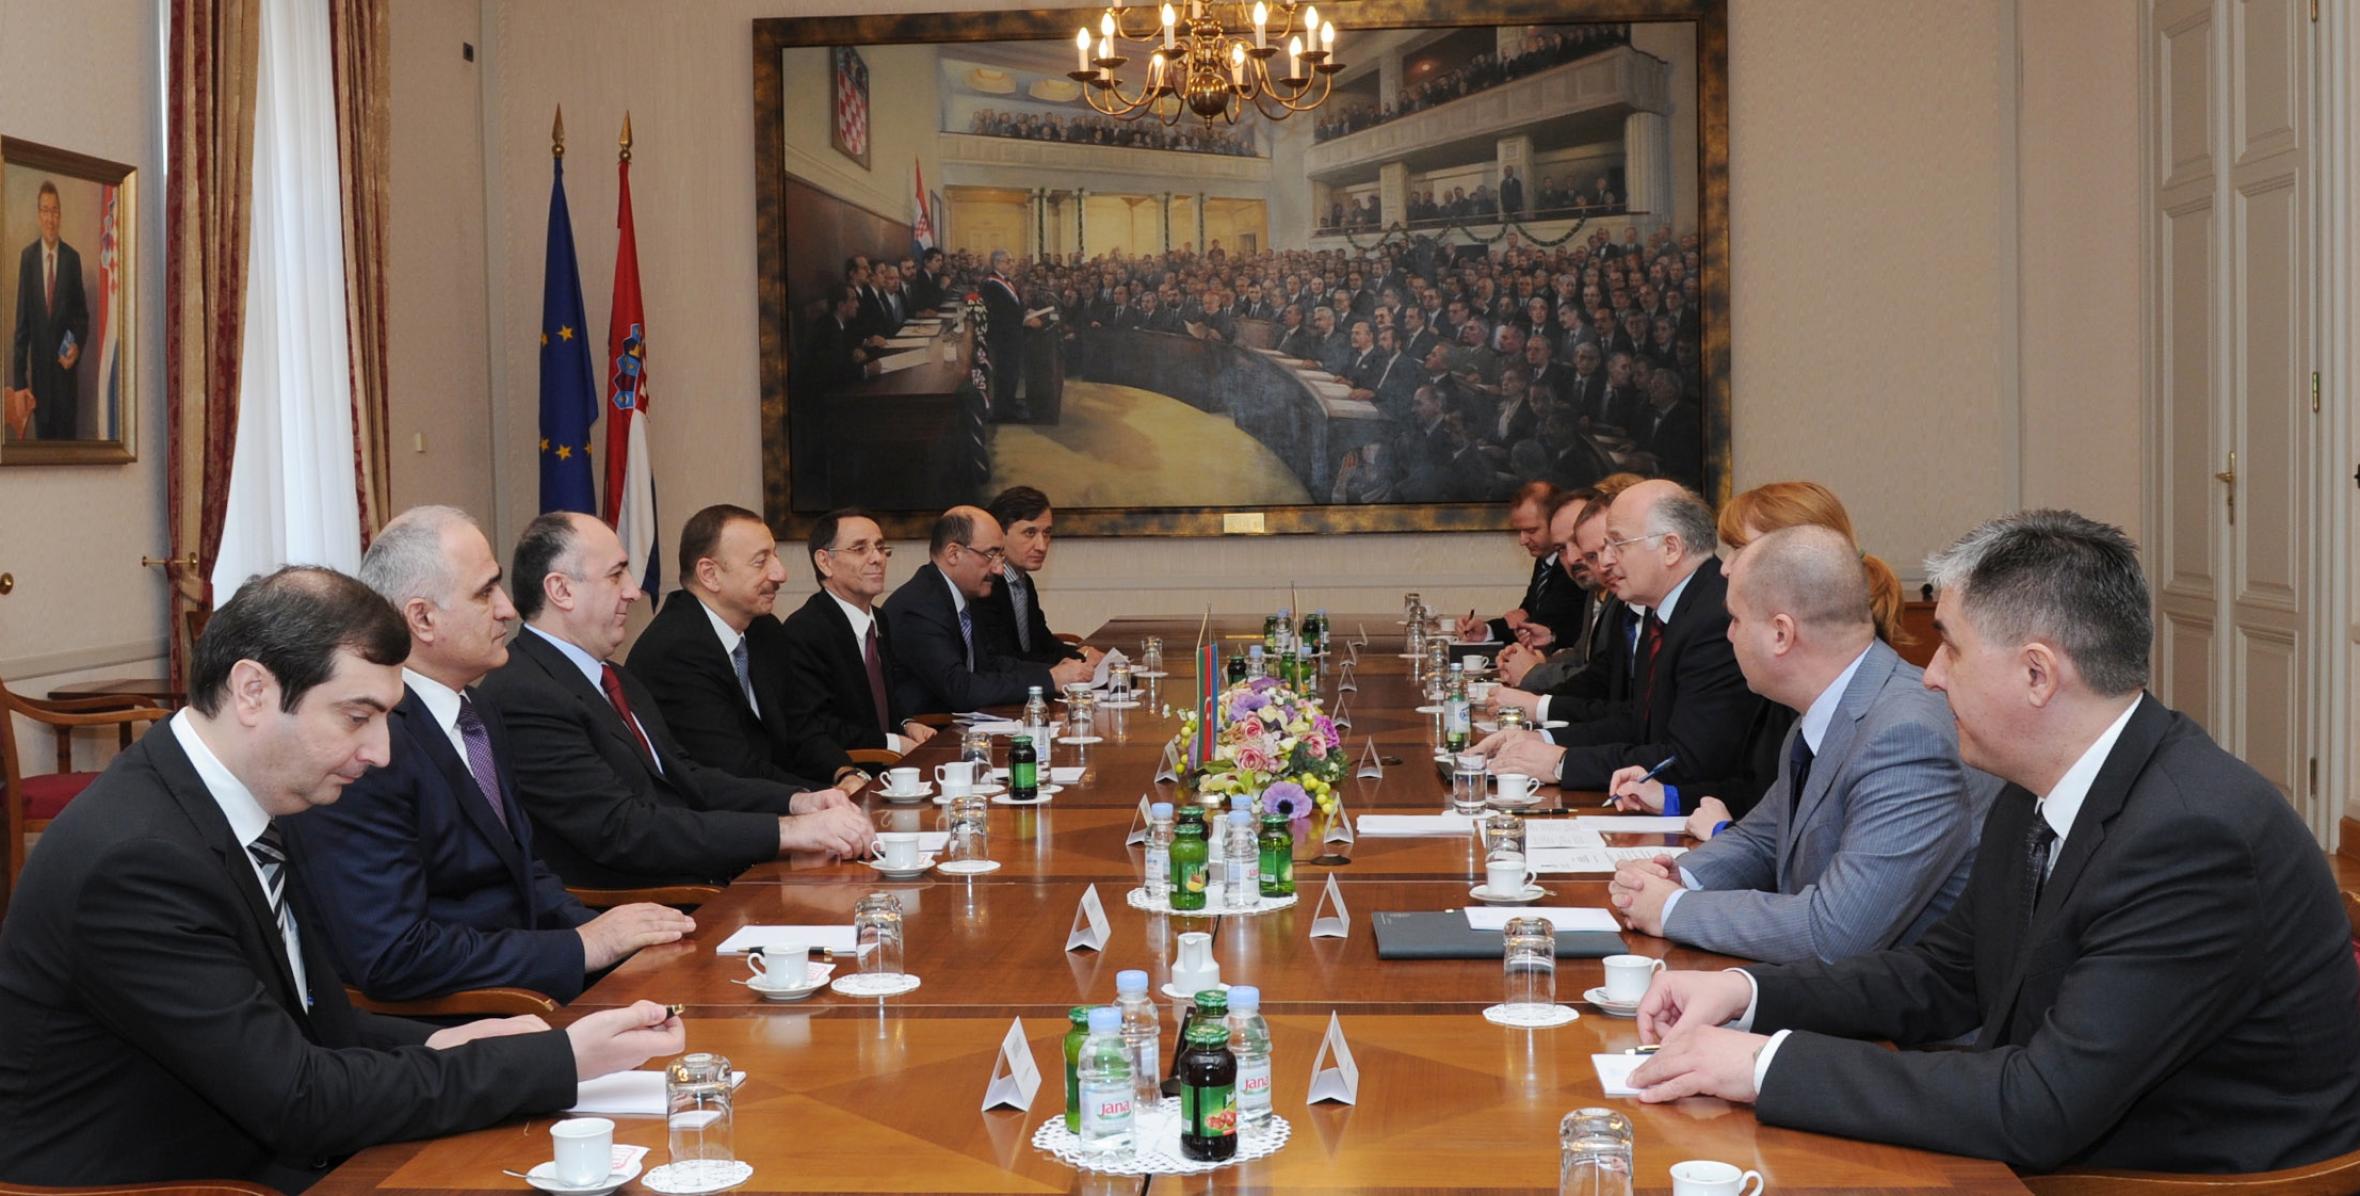 Ilham Aliyev met with Parliament Speaker of Croatia Josip Leko